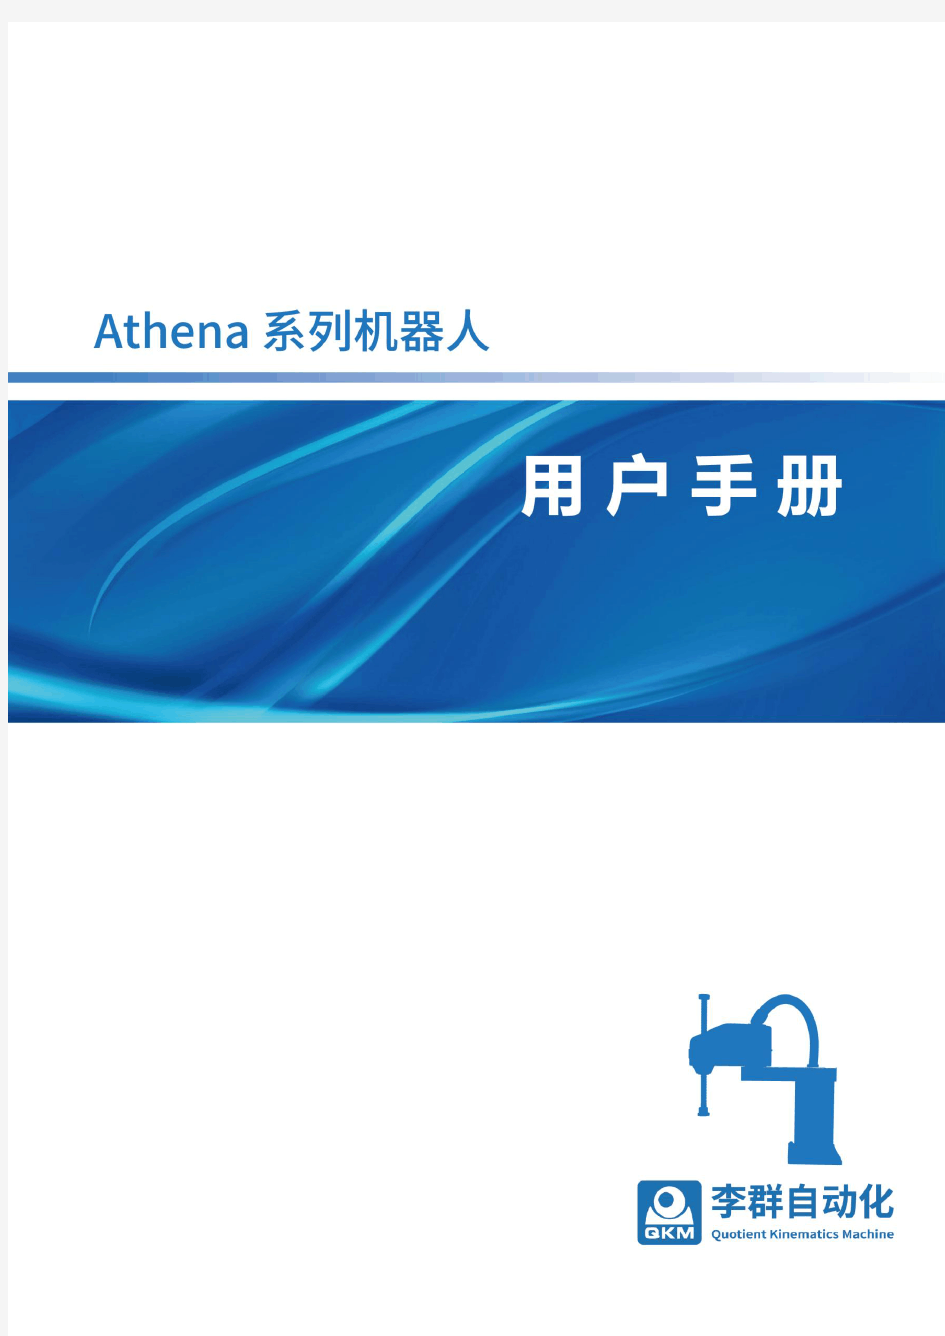 Athena系列机器人用户手册 官网电子版)